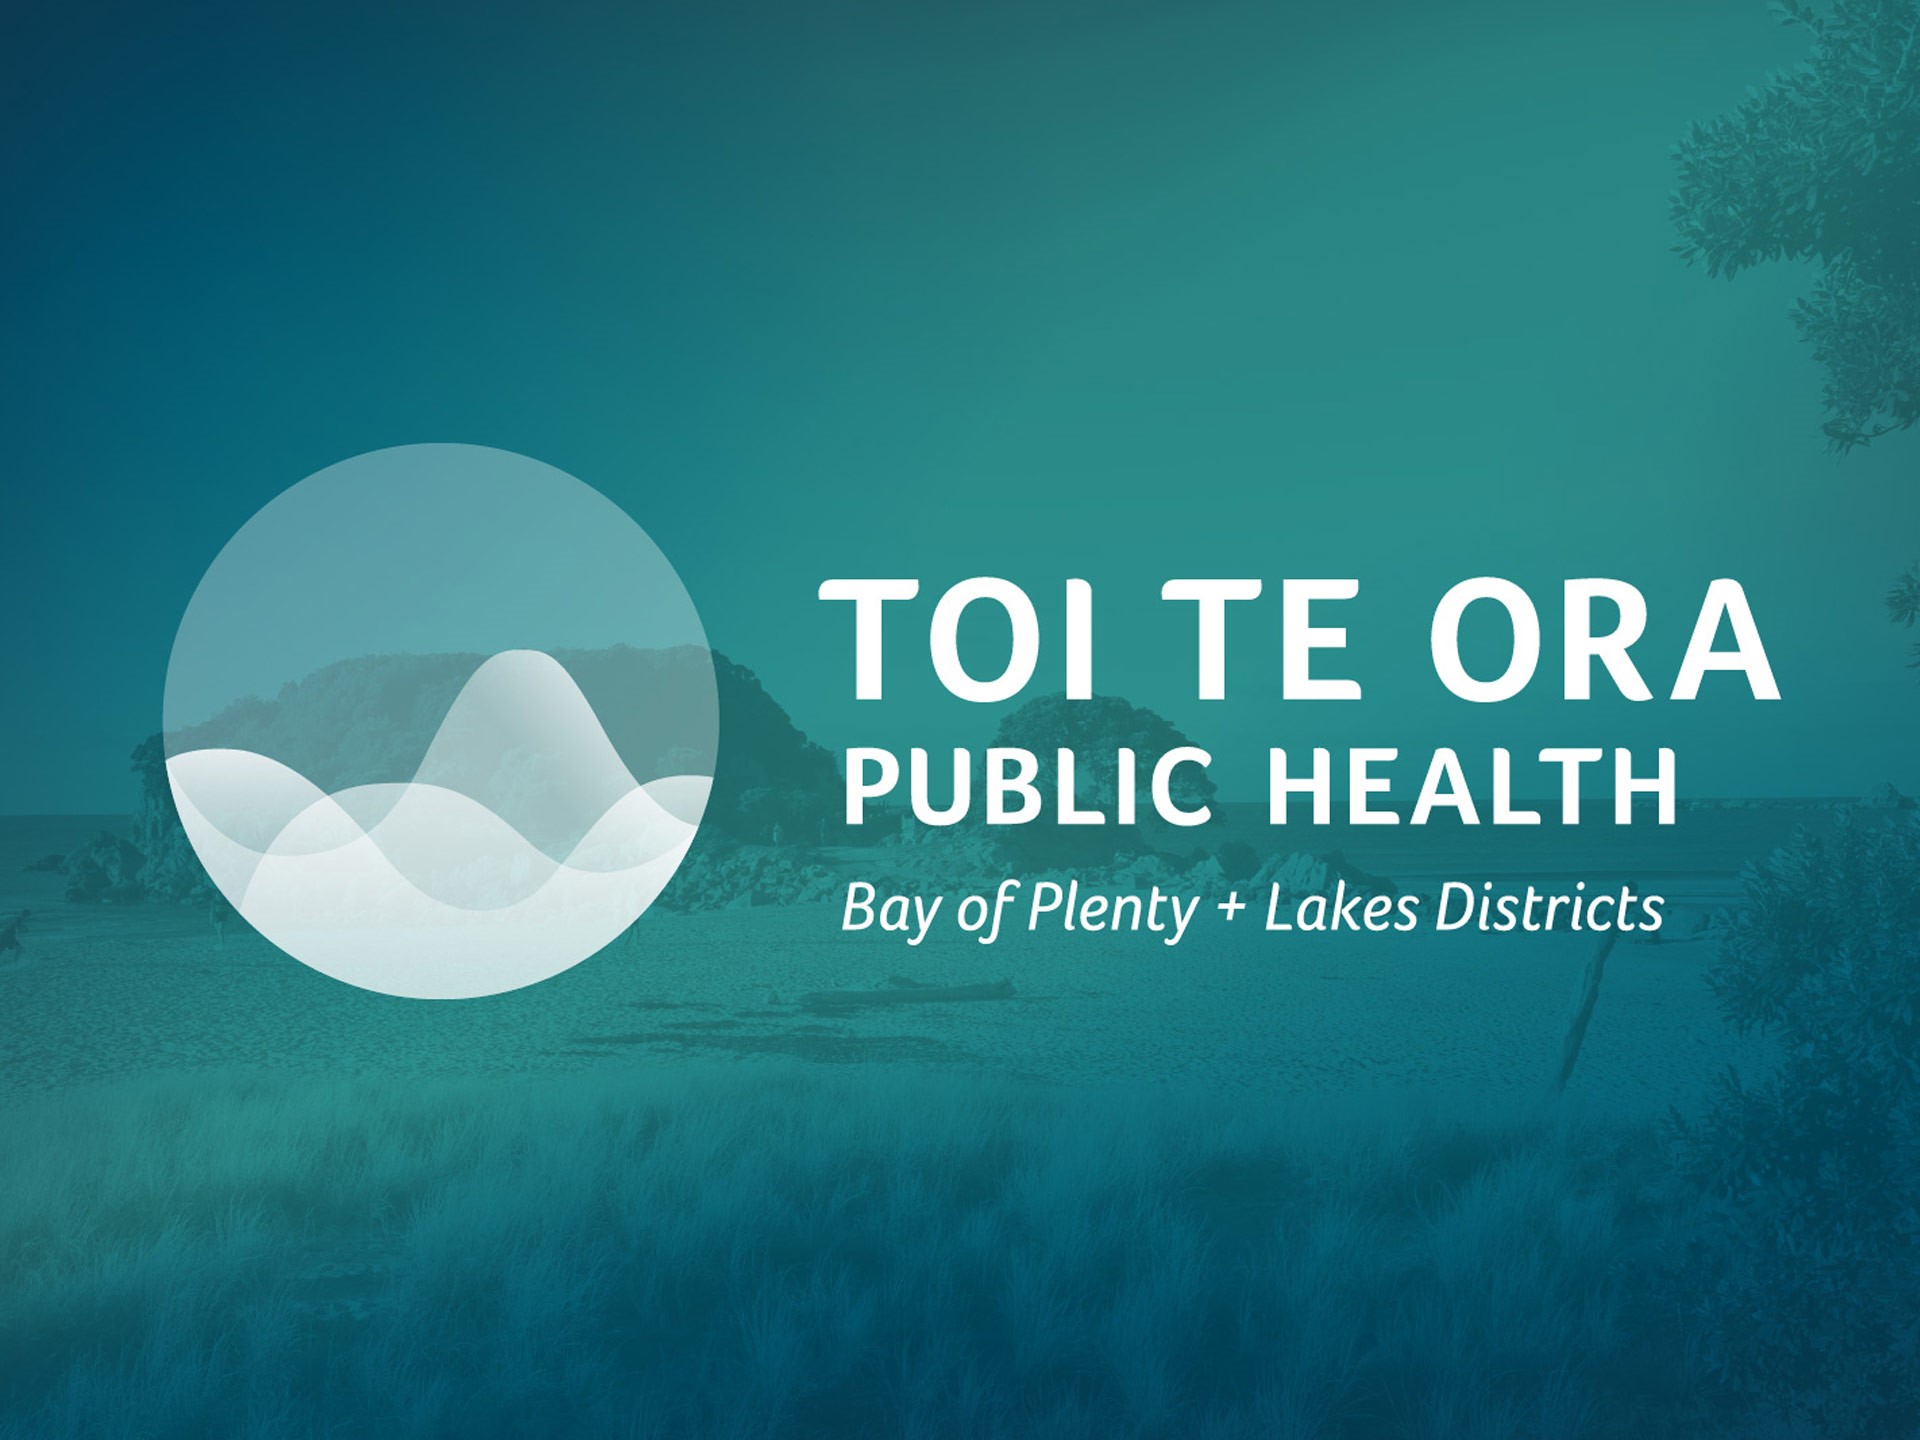 Health warnings issued for Lake Ohakuri and Lake Maraetai